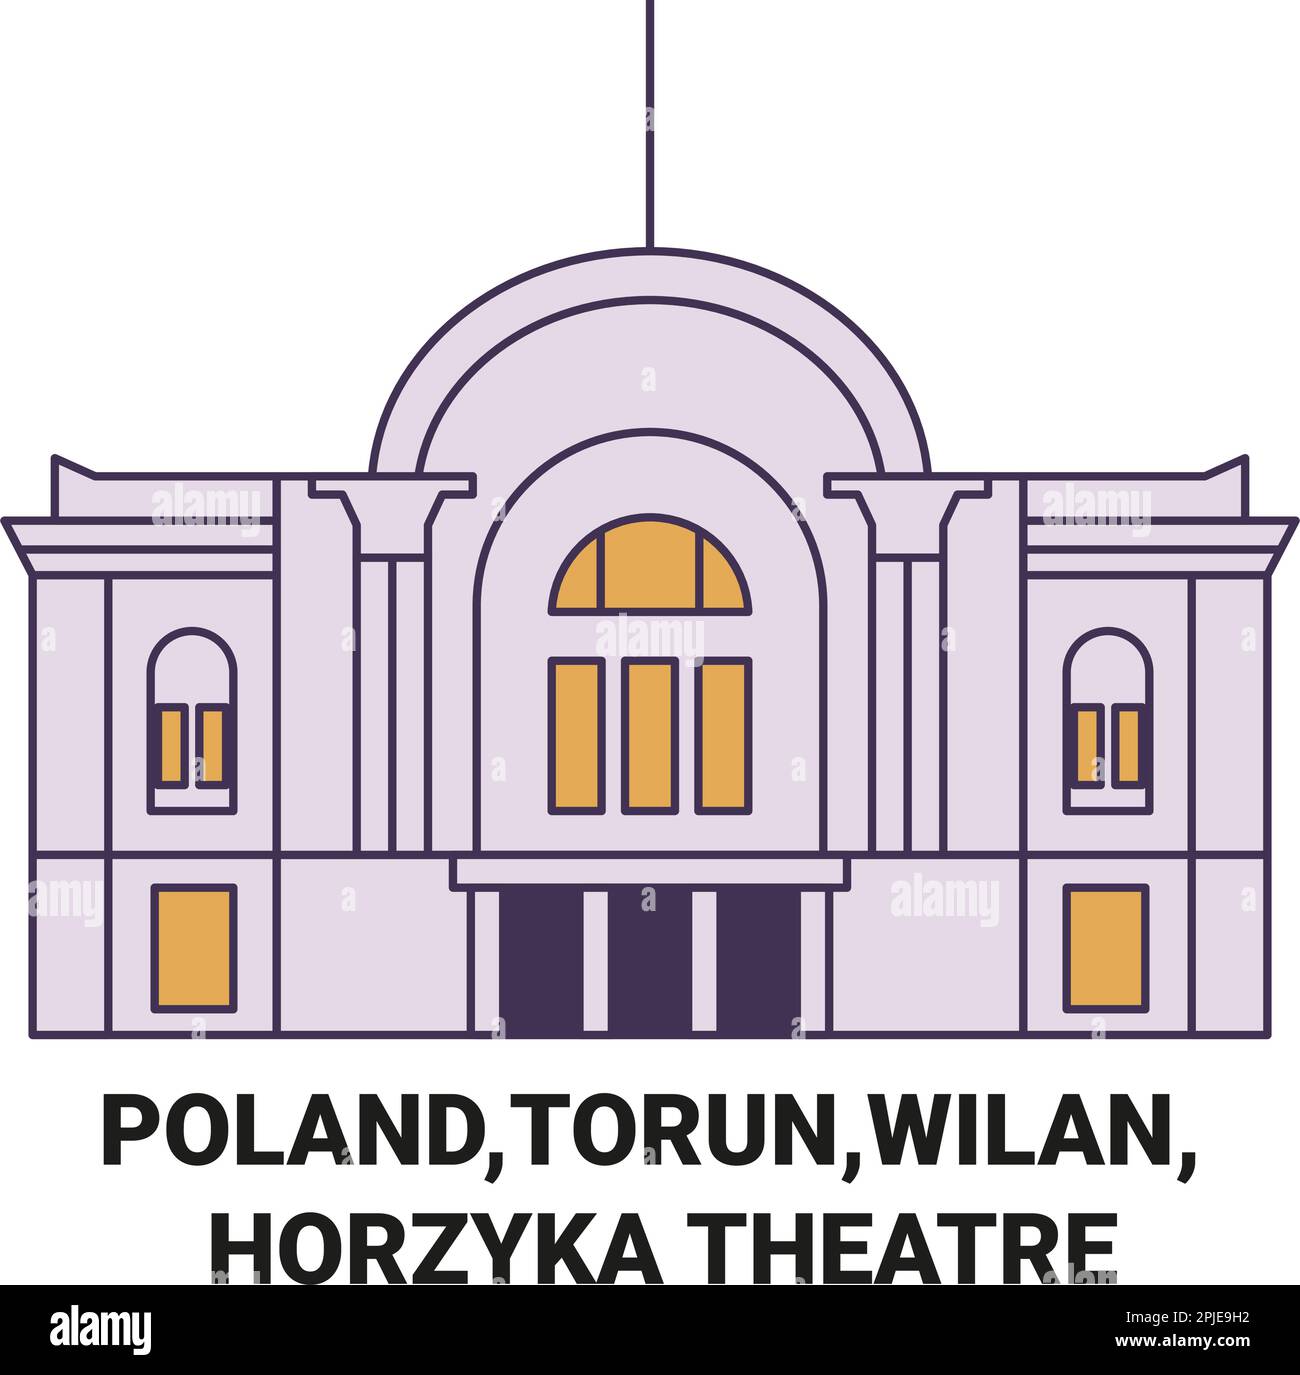 Poland,Torun,Wilan, Horzyka Theatre travel landmark vector illustration Stock Vector